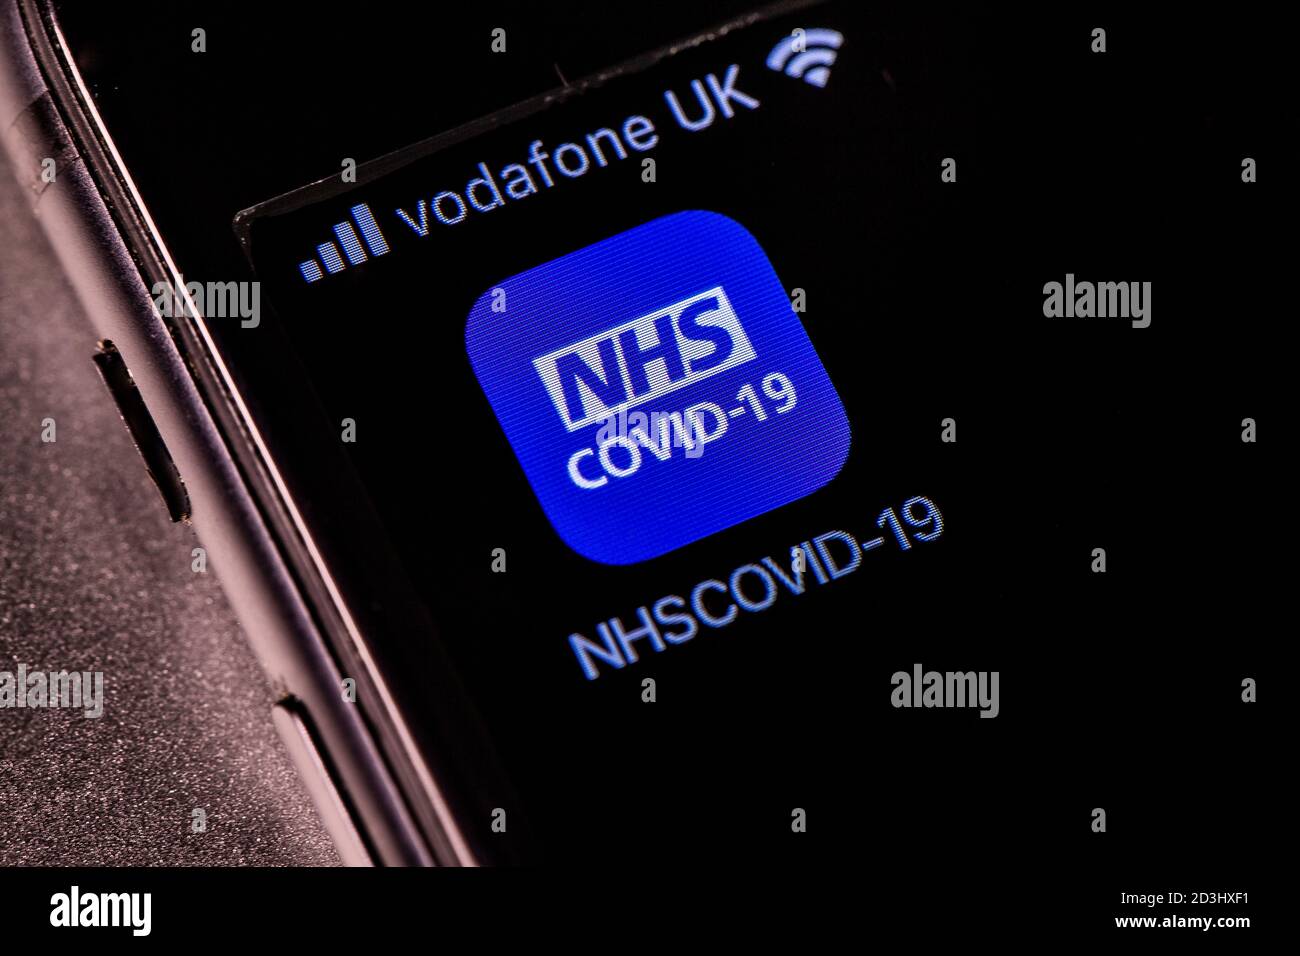 L'application de recherche de contacts officielle NHS Covid-19 est visible et installée sur un écran d'iPhone. Banque D'Images